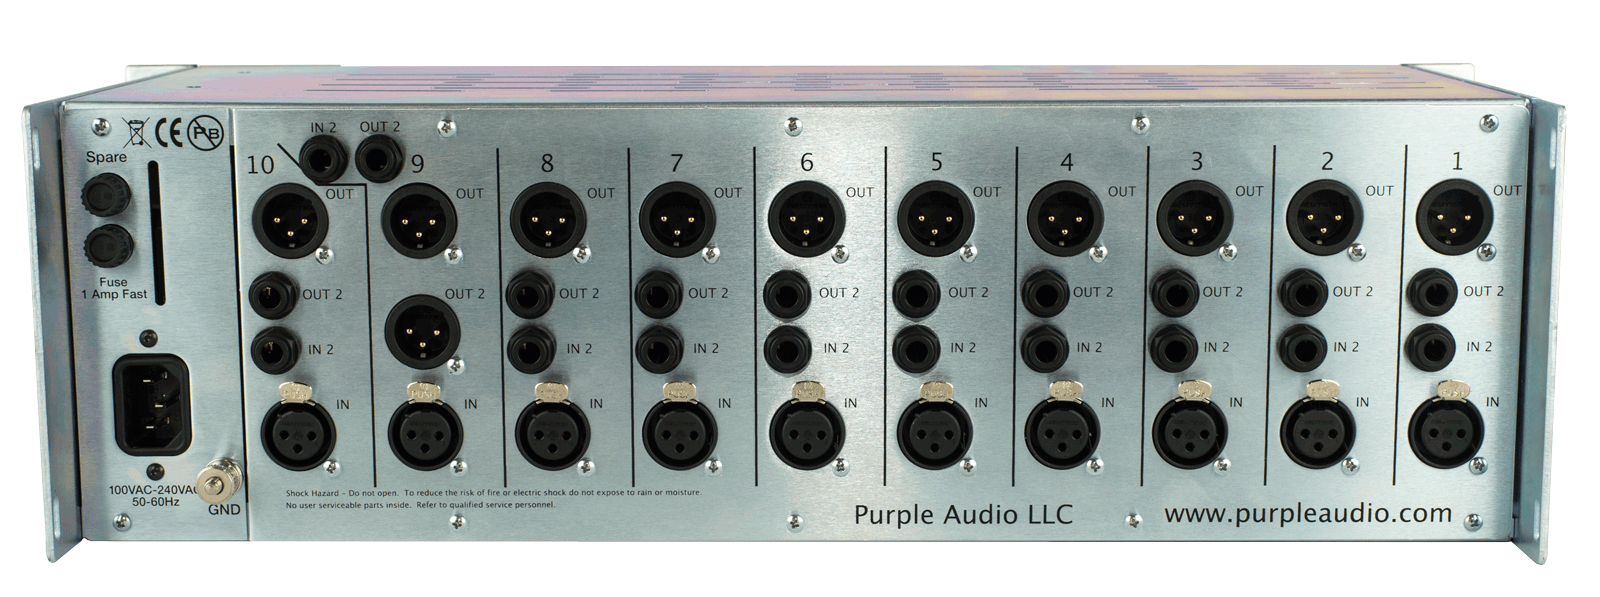 Purple Audio Sweet Ten Rack - Studiorack - Variation 3